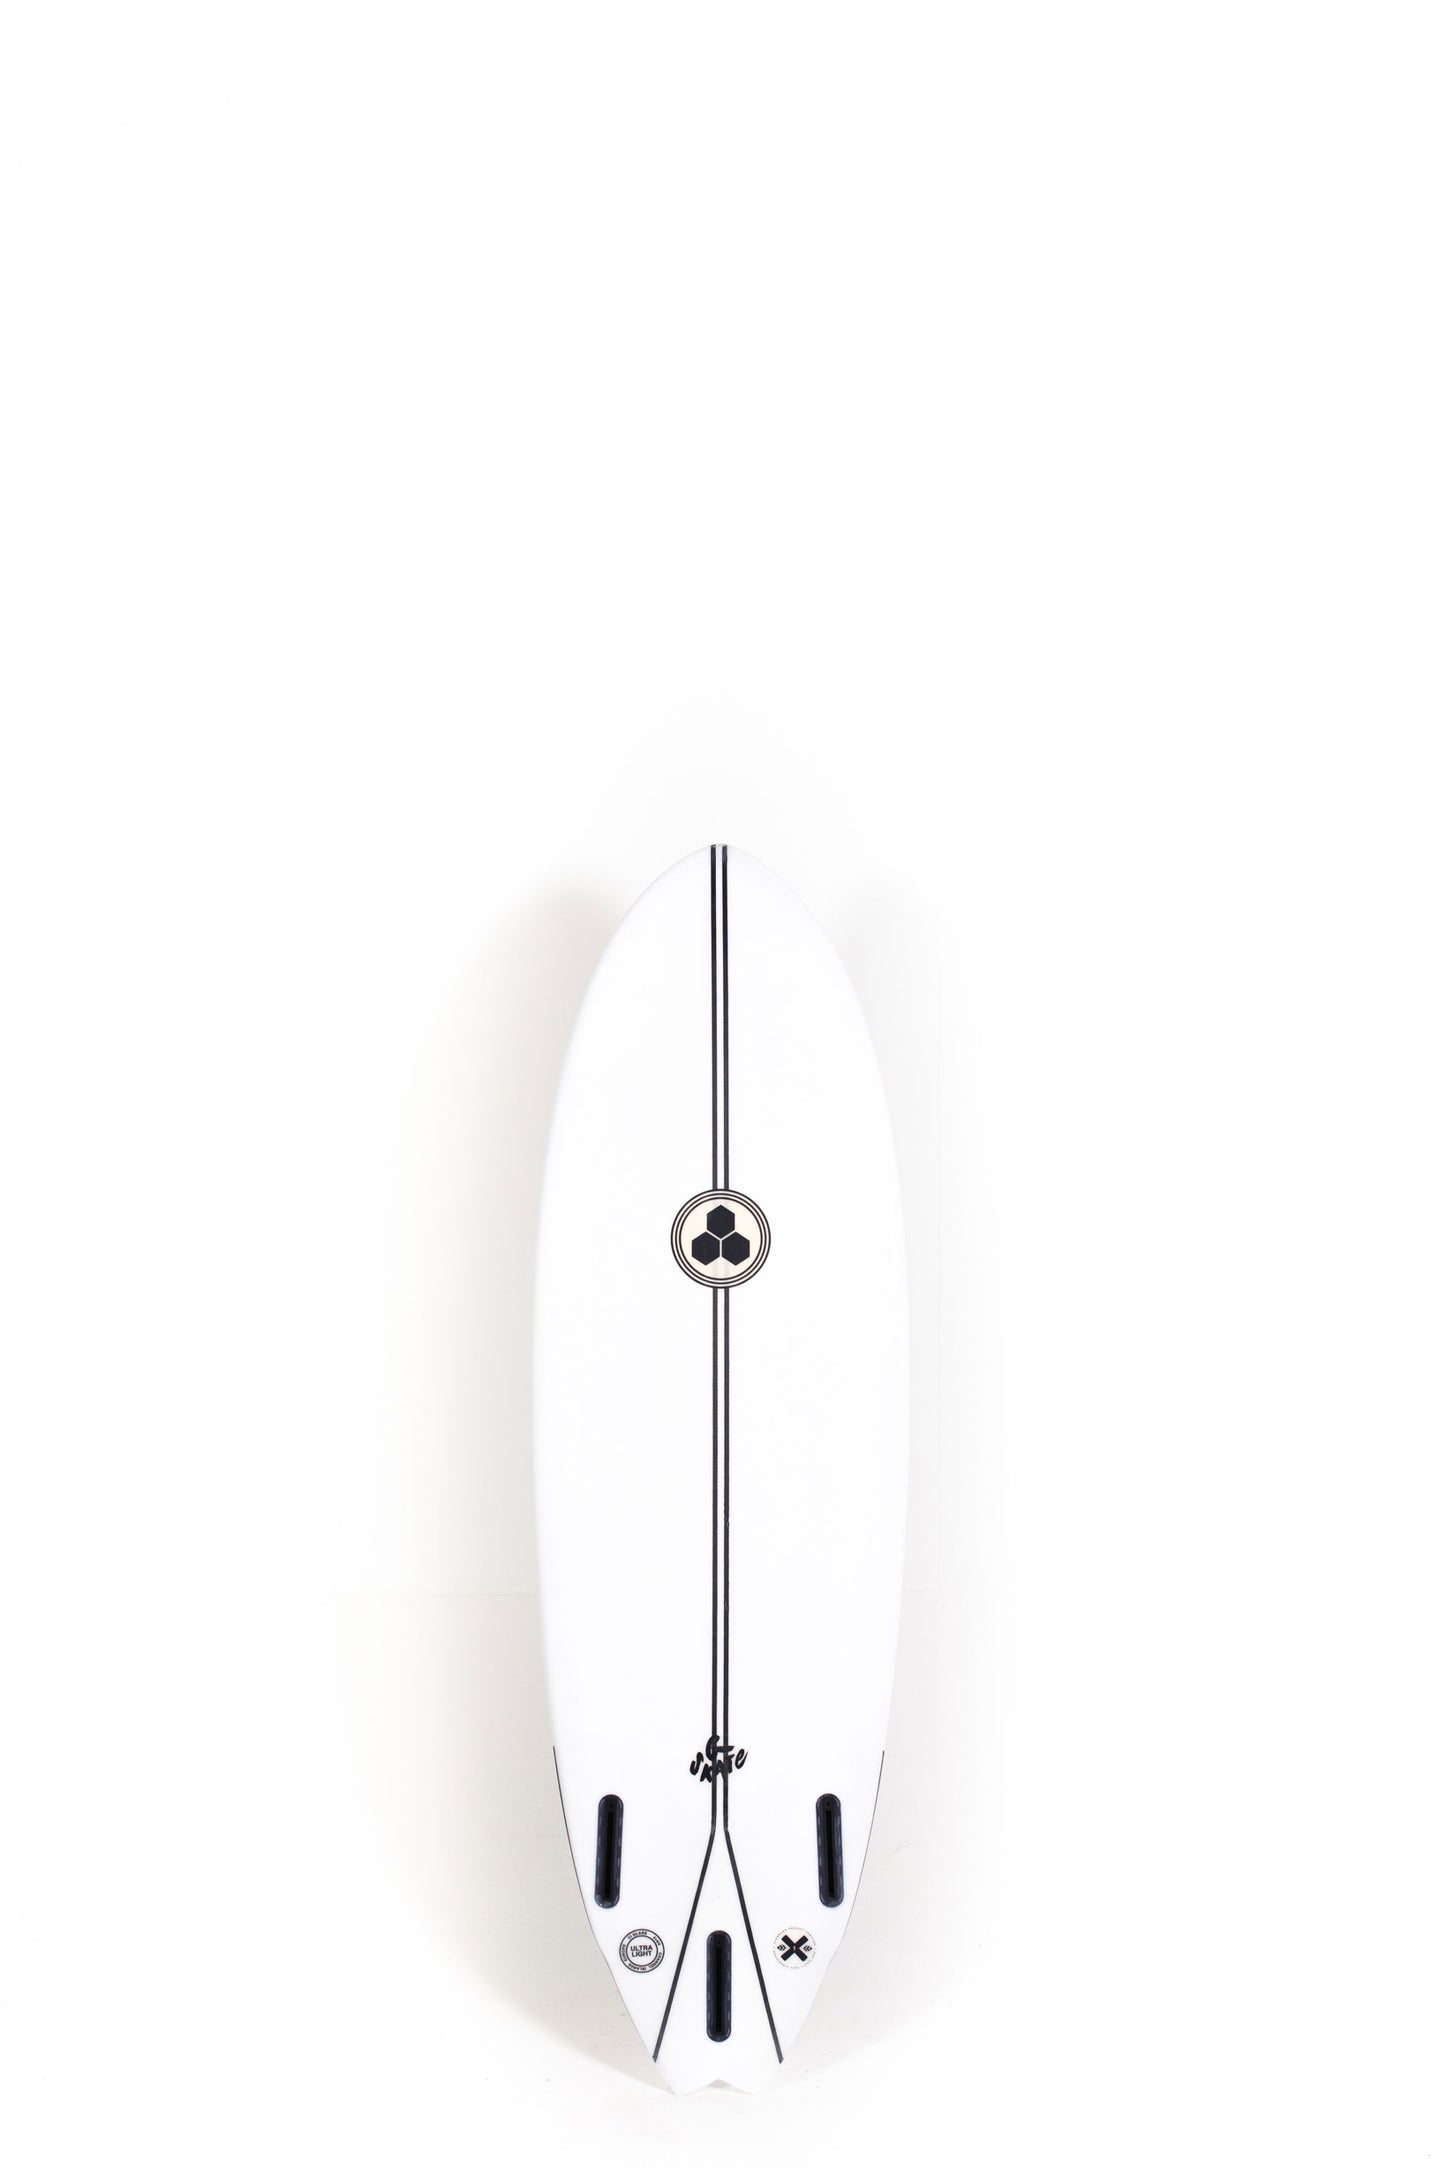 Pukas Surf Shop - Channel Islands - G-Skate by Al Merrick - SPINE TEK - 5'4" x 19 x 2 3/8 - 27.21L - CI28736